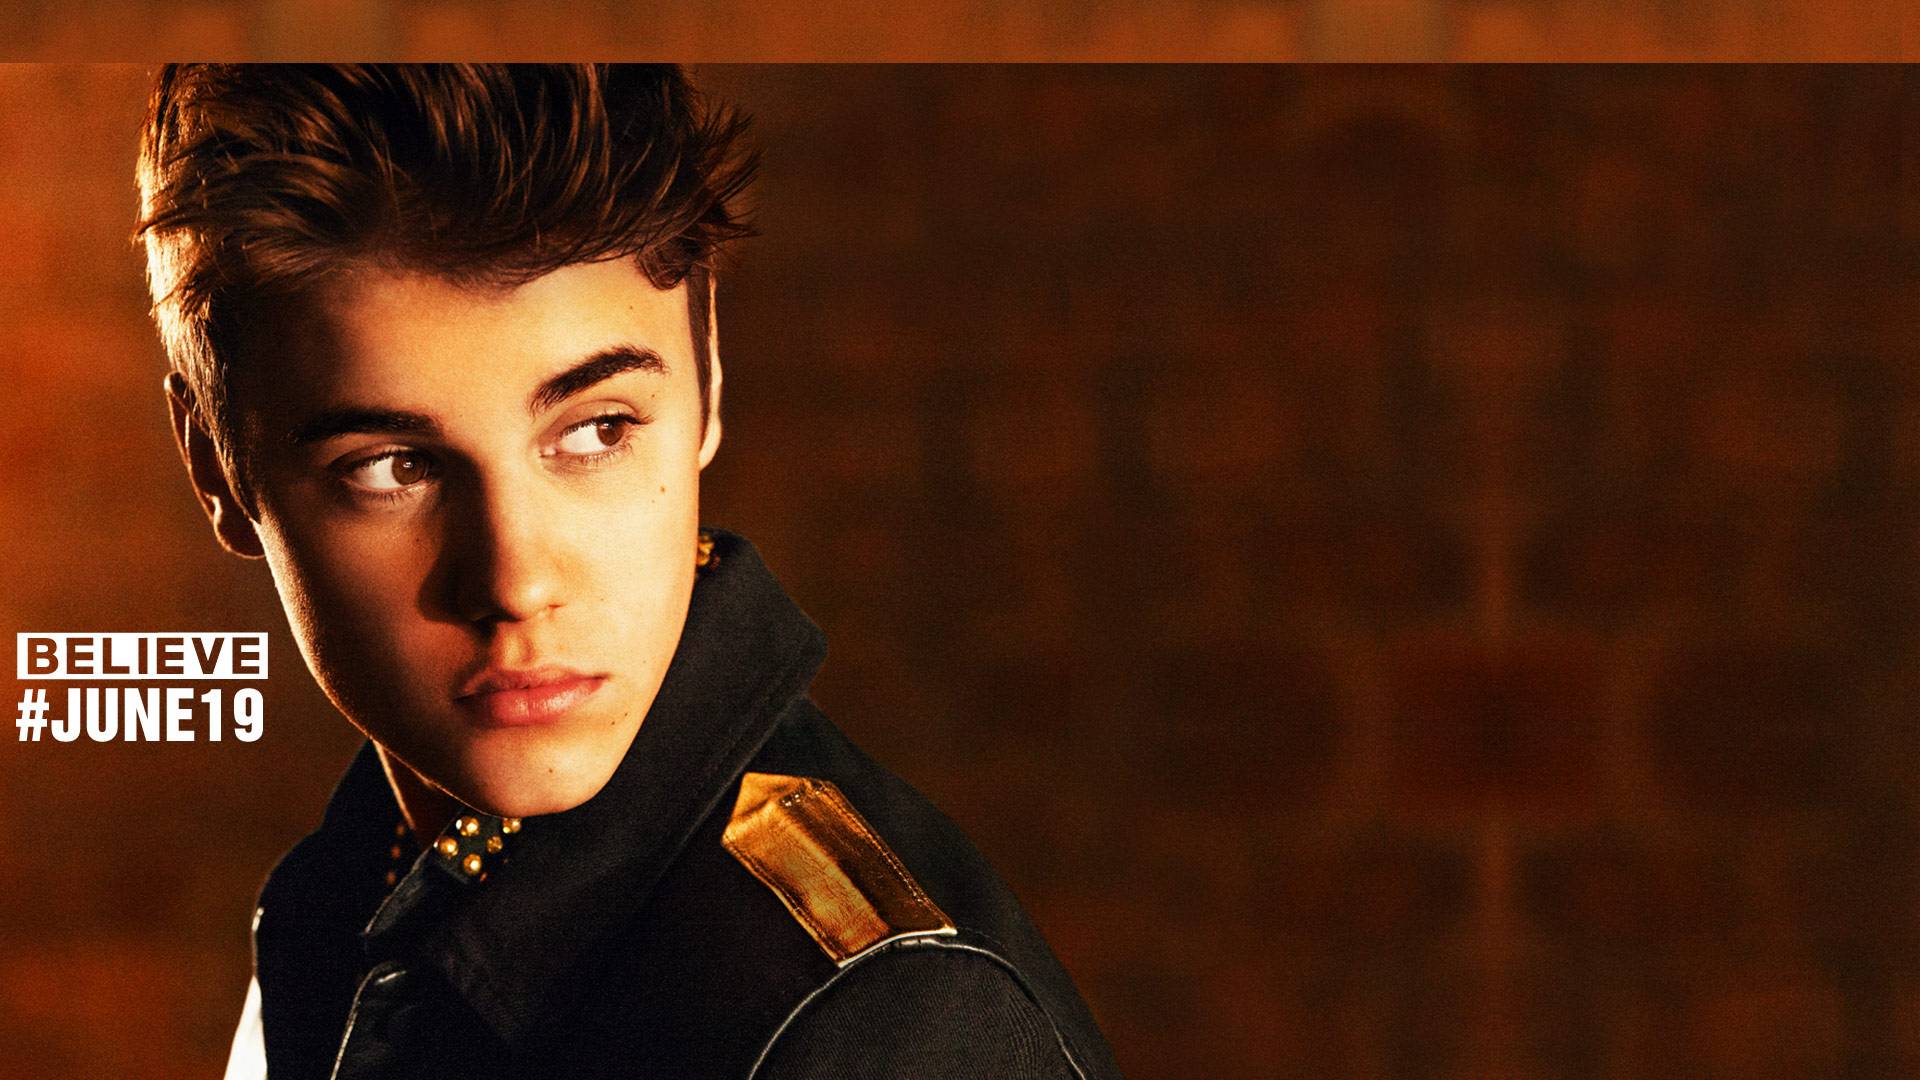 Justin Bieber Sorry Wallpaper - WallpaperSafari